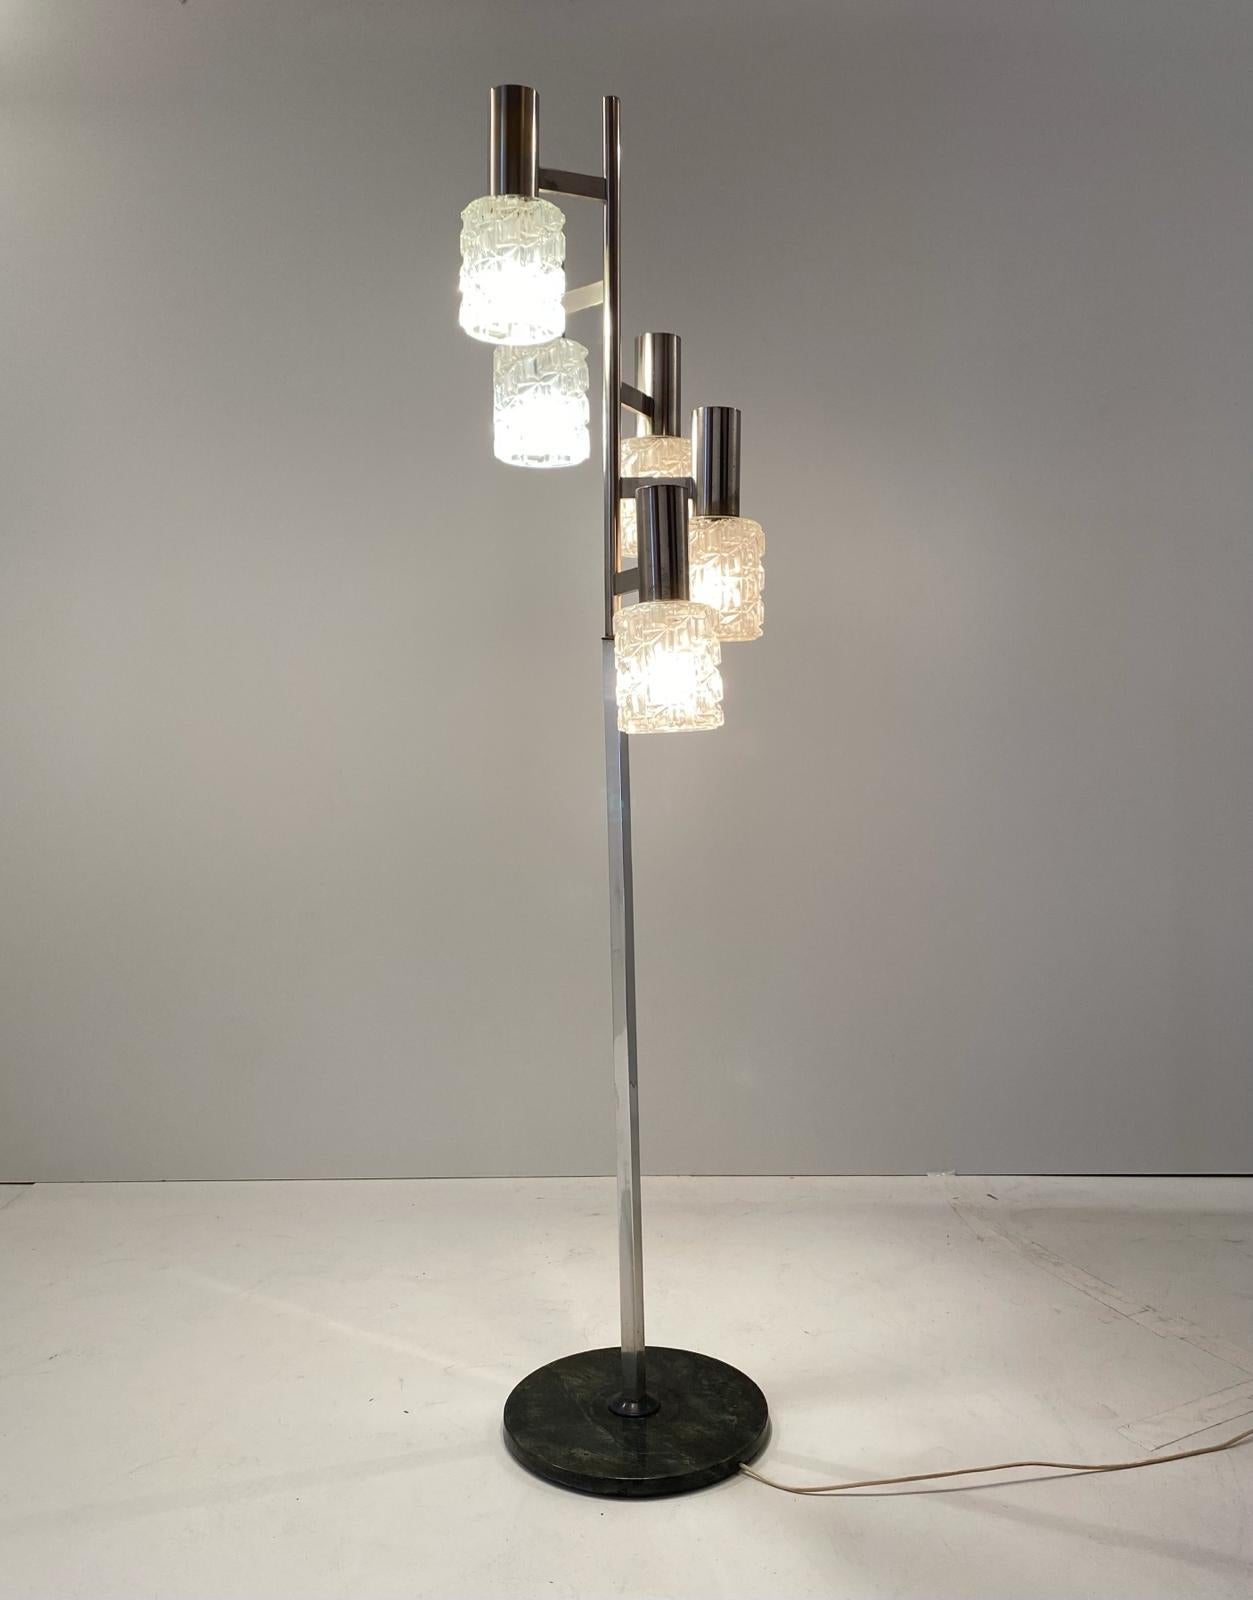 Lampadaire vintage, design italien du milieu des années 1960.
L'article est composé d'une base en fer noir et d'un mât en fer chromé avec cinq spots de lumière en verre raffiné. Une fois allumée, la lampe produit un bel effet de lumière. Les parties